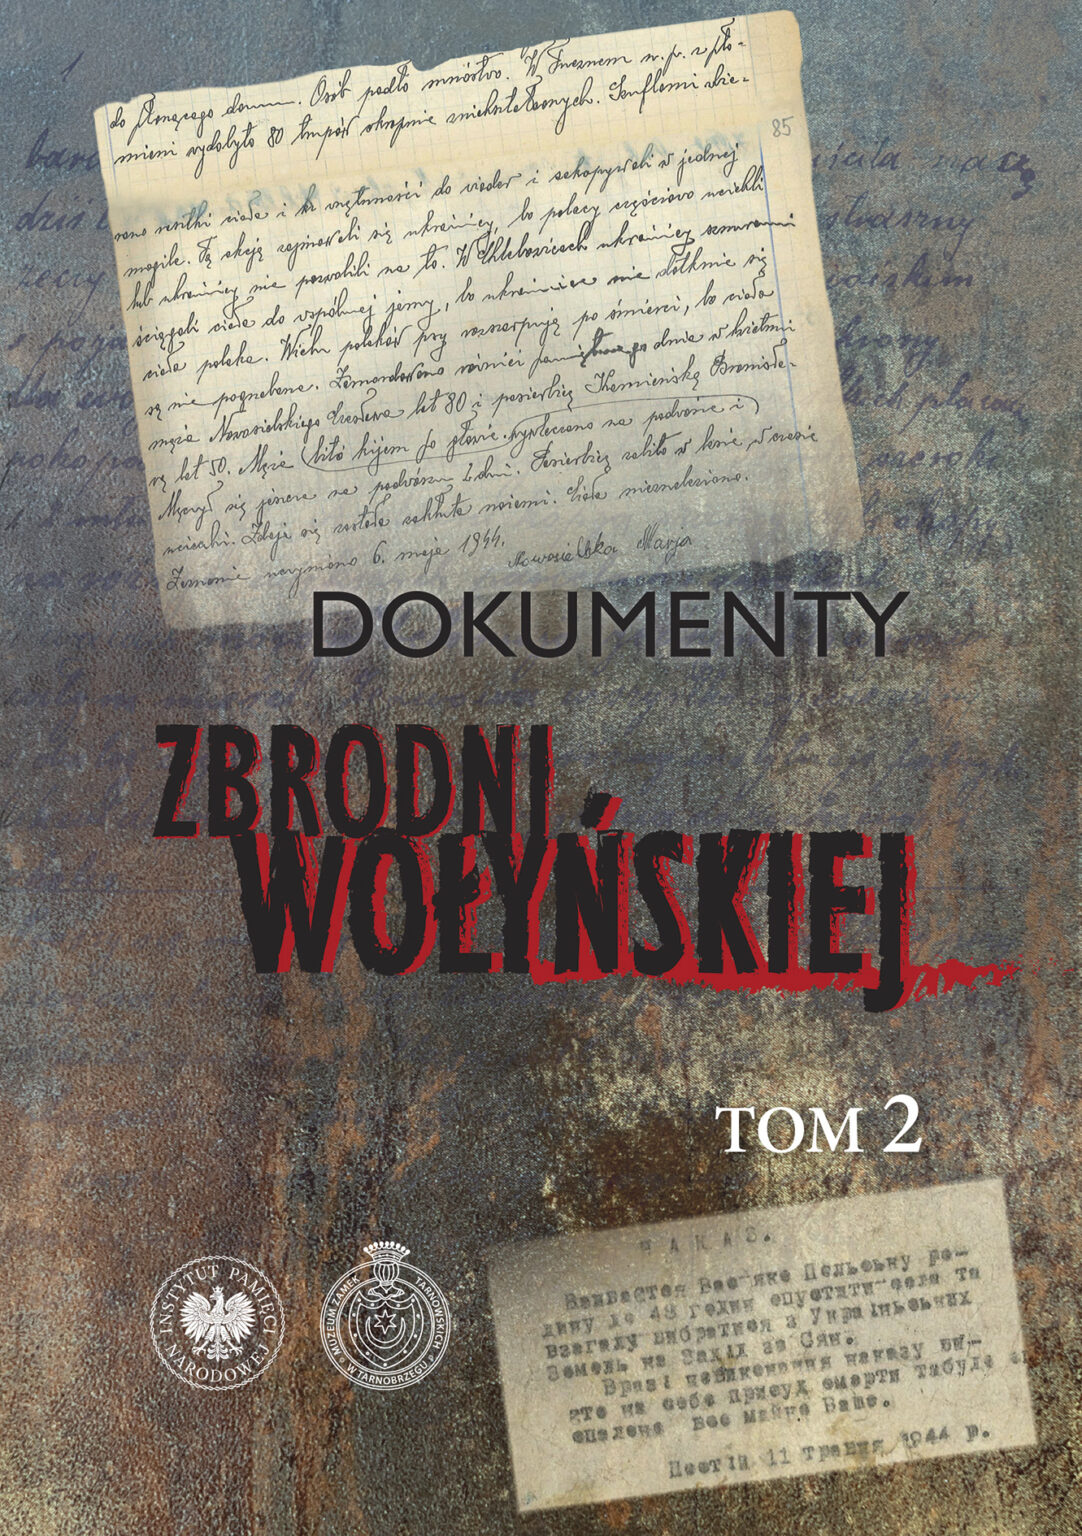 Promocja II tomu "Dokumentów zbrodni wołyńskiej"